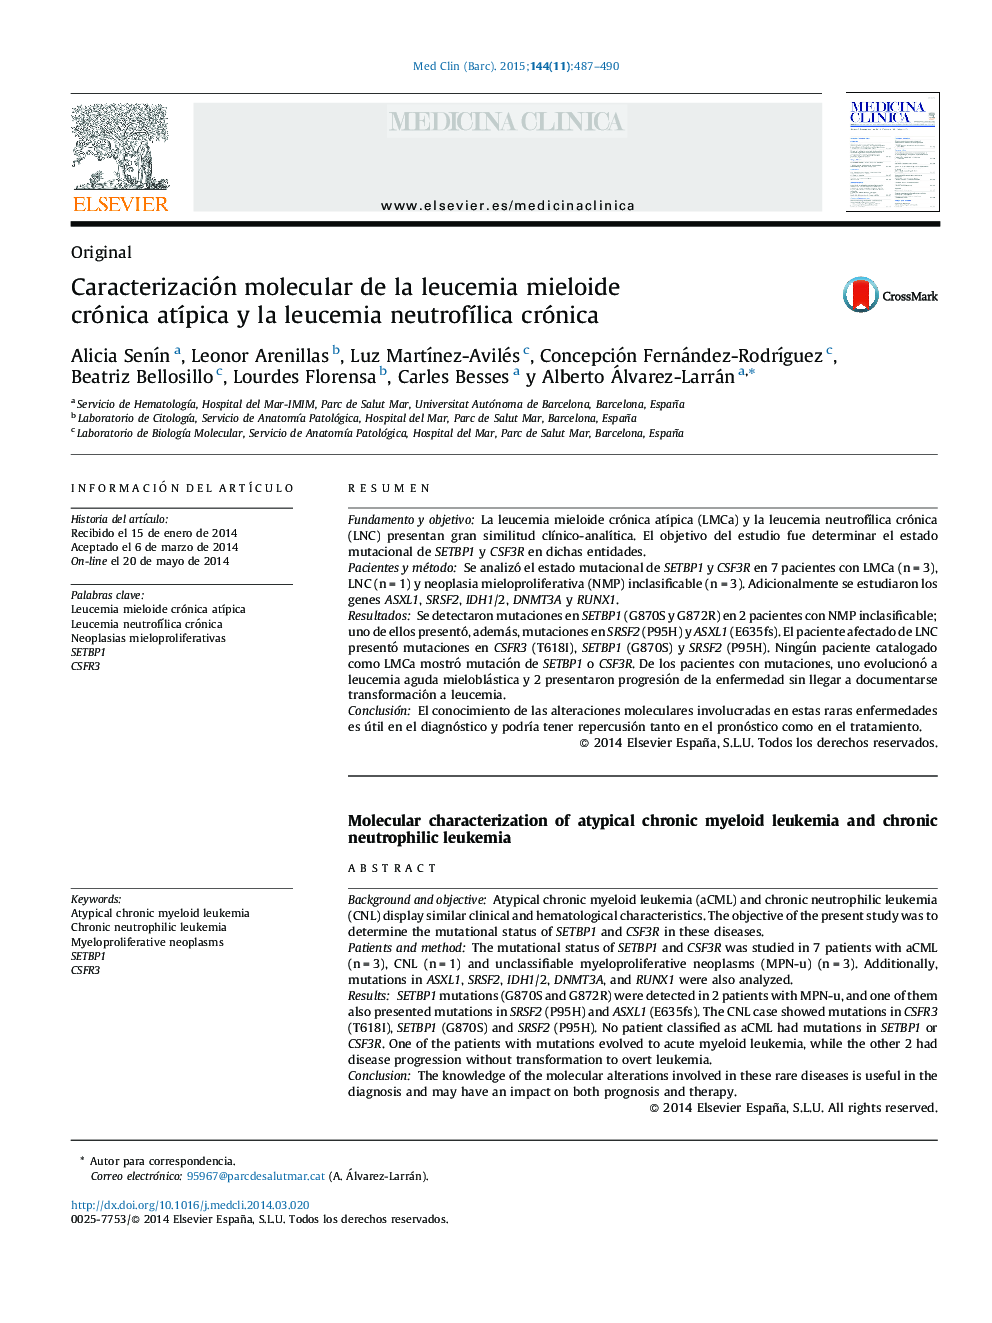 Caracterización molecular de la leucemia mieloide crónica atÃ­pica y la leucemia neutrofÃ­lica crónica